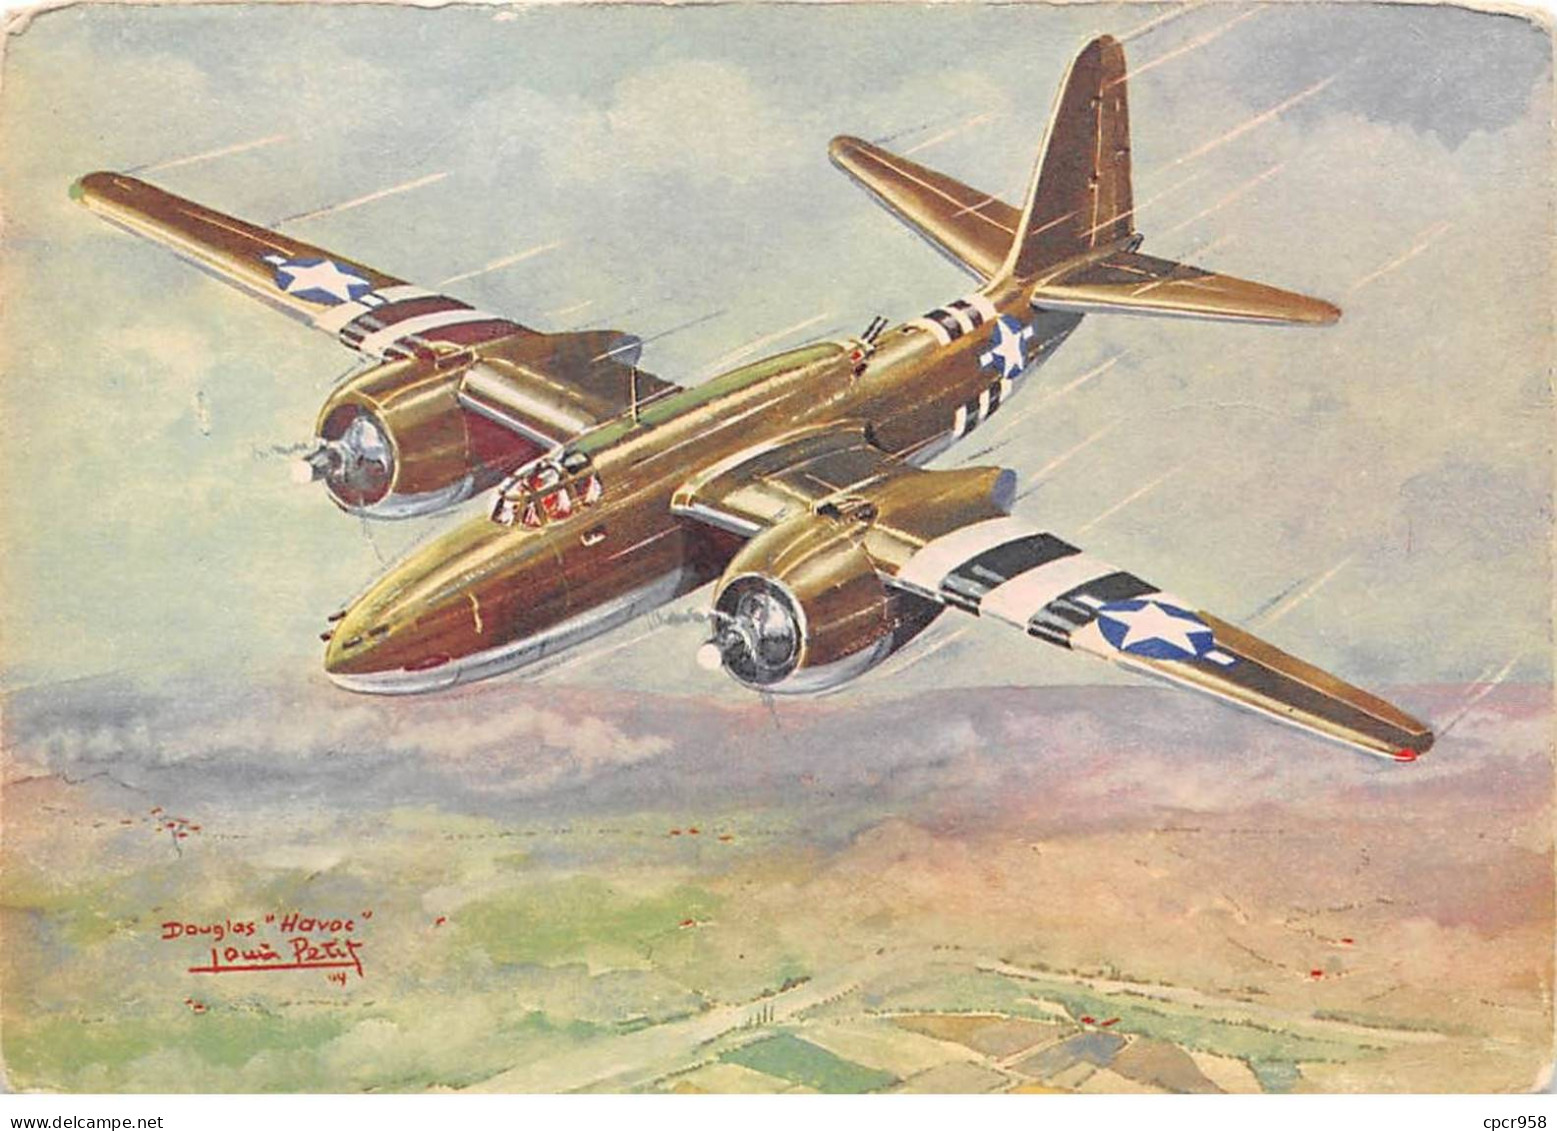 Aviation - N°81330 - Collections Des Avions Alliés (Série II) Douglas Havoc - Bombardier Moyen - Louis Petit - 1939-1945: 2a Guerra